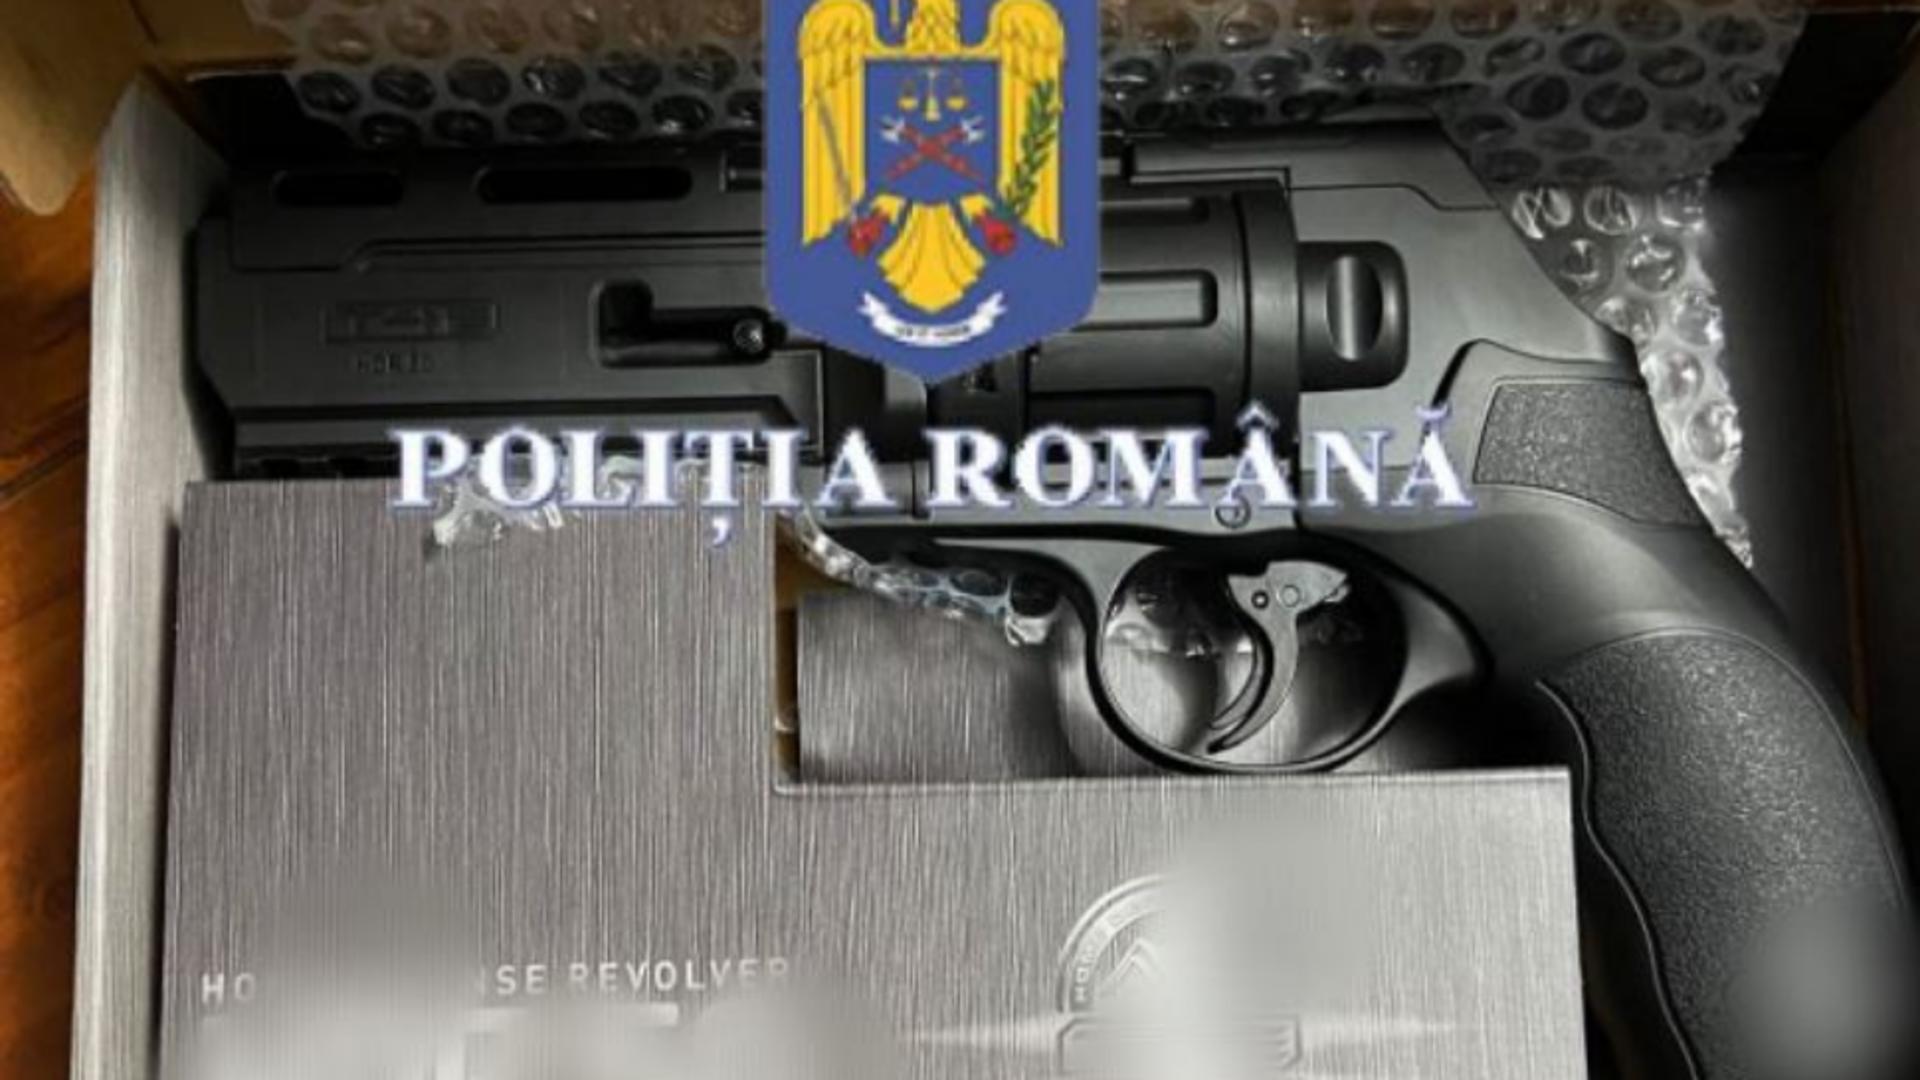 Italian, urmărit penal pentru contrabandă cu arme